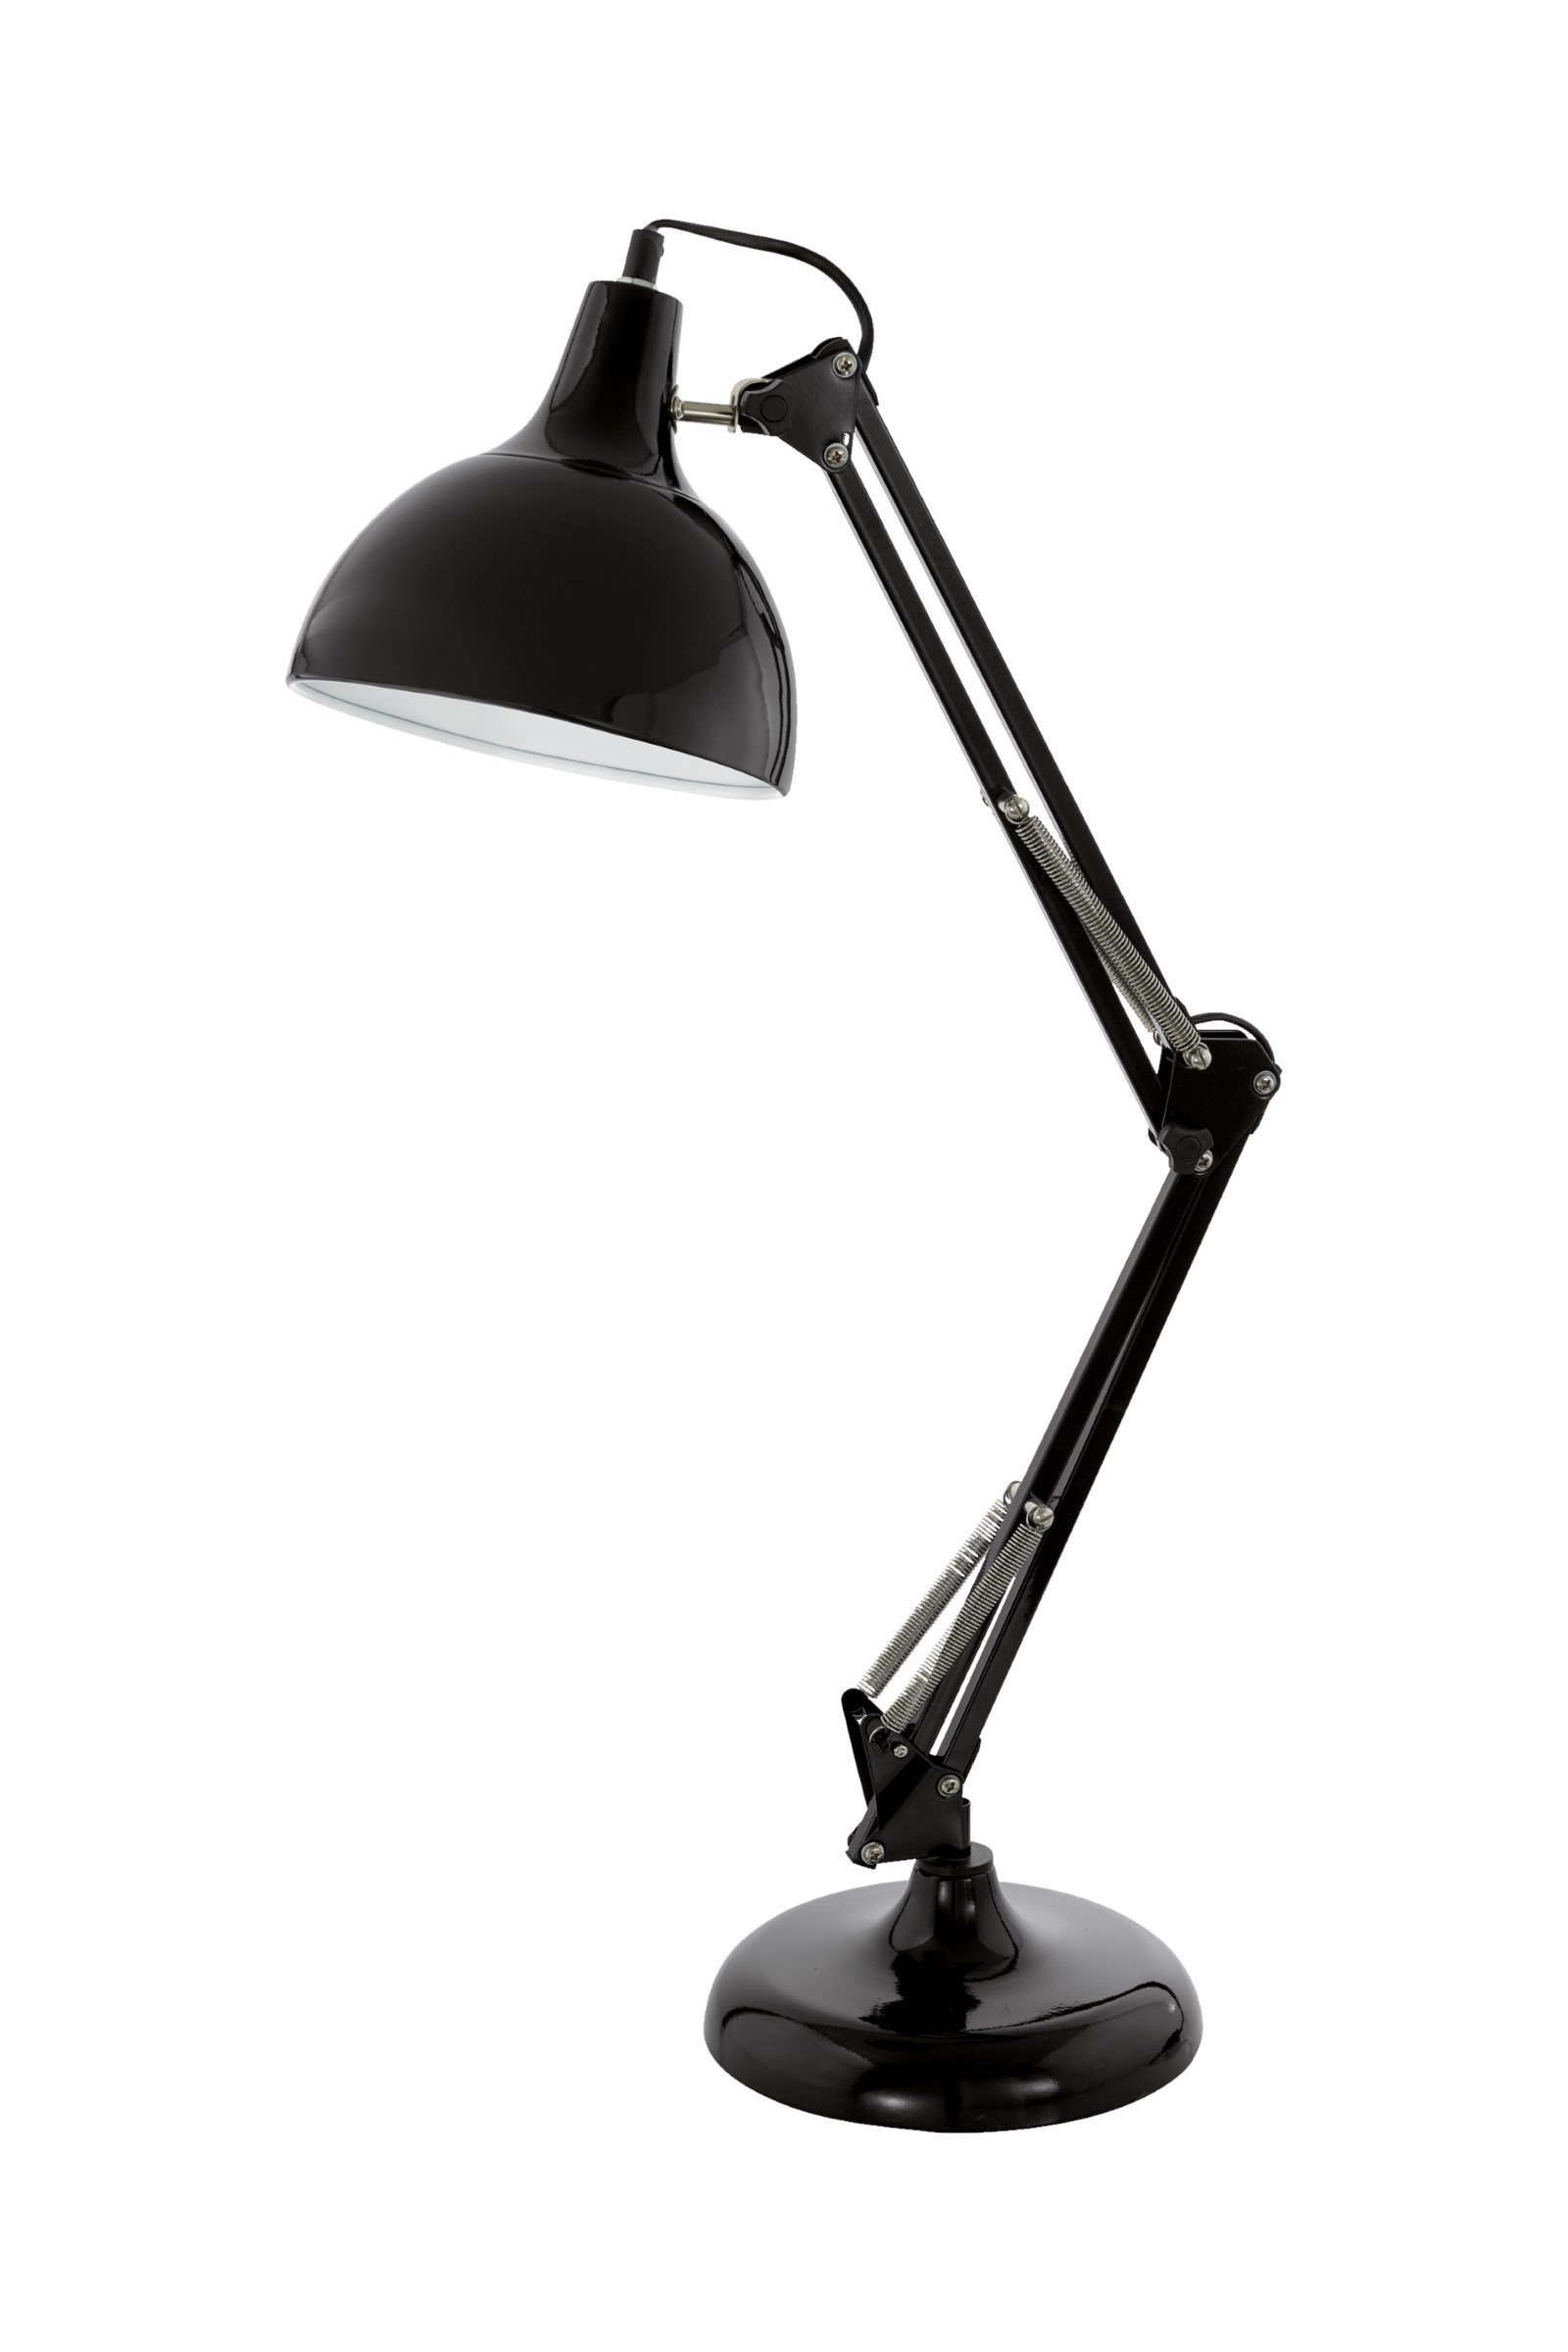   
                        Настільна лампа EGLO (Австрія) 83092    
                         у стилі скандинавський, лофт.  
                        Тип джерела світла: cвітлодіодні led, енергозберігаючі, розжарювання.                                                 Кольори плафонів і підвісок: чорний, білий.                         Матеріал: сталь.                          фото 1